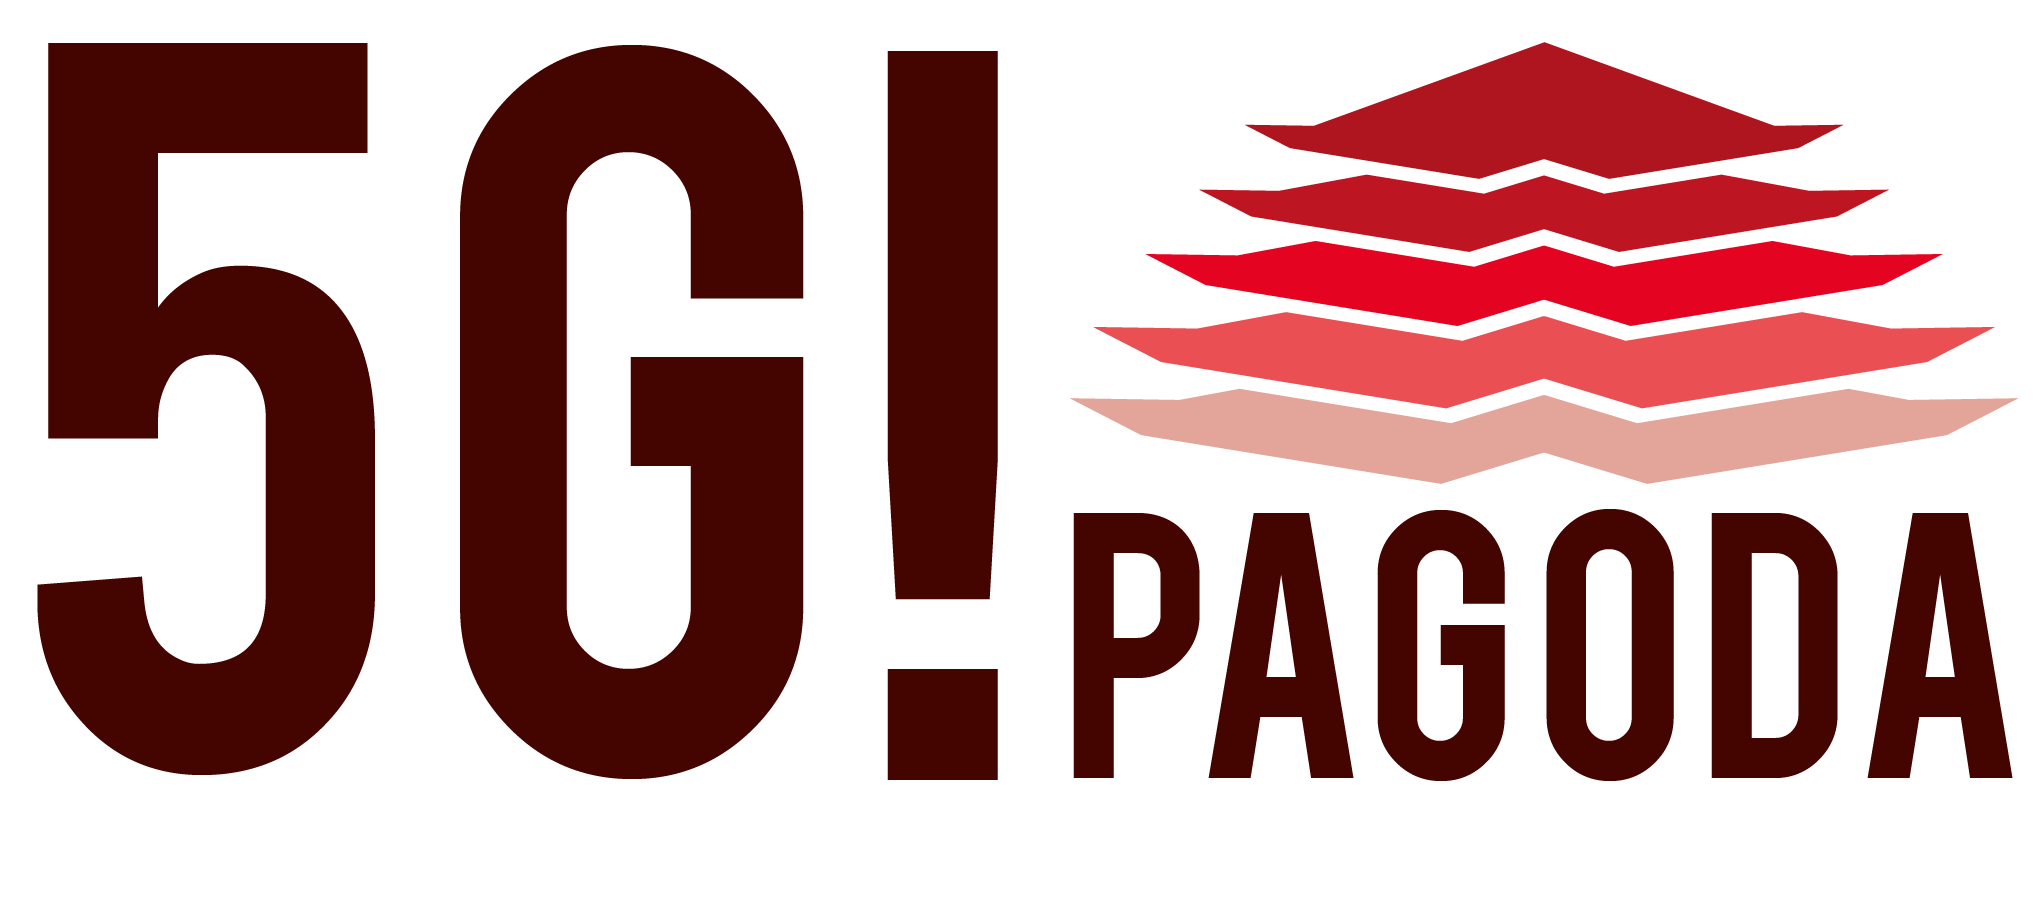 5G!Pagoda Logo